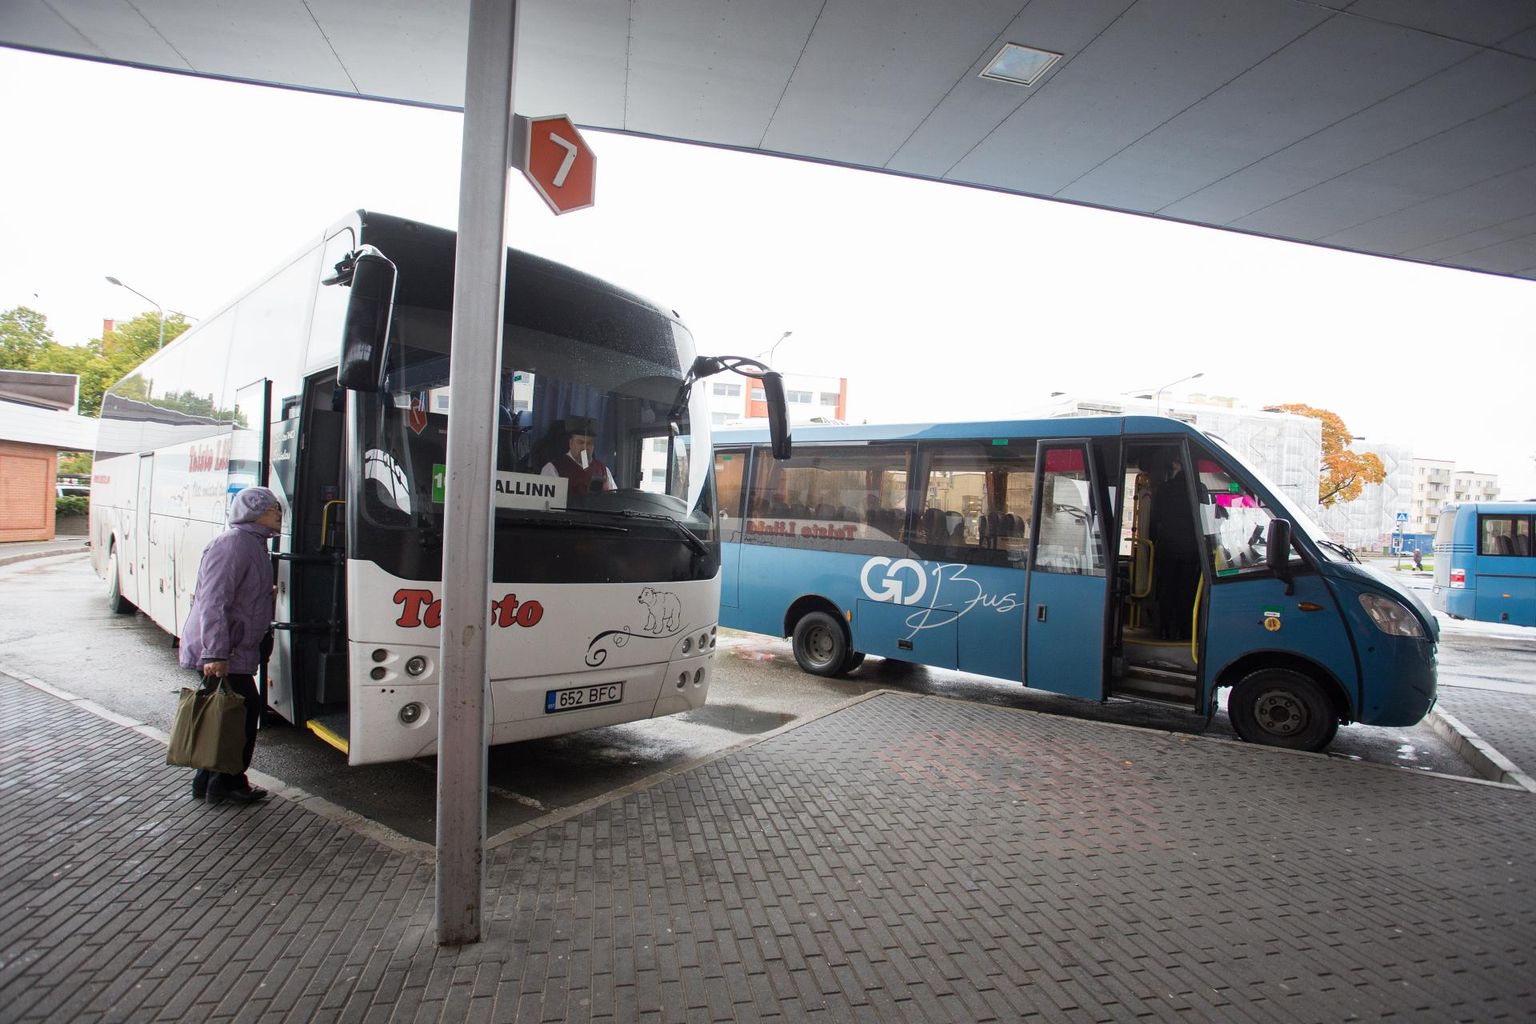 Rakvere bussijaamast ei saa tasuta kuhugi sõita. Ja kui maakonnaliinil sõitev buss juhtub maakonna piirest välja põikama, peavad ka naabrid, kel muidu bussisõit tasuta, selles bussis pileti ostma.